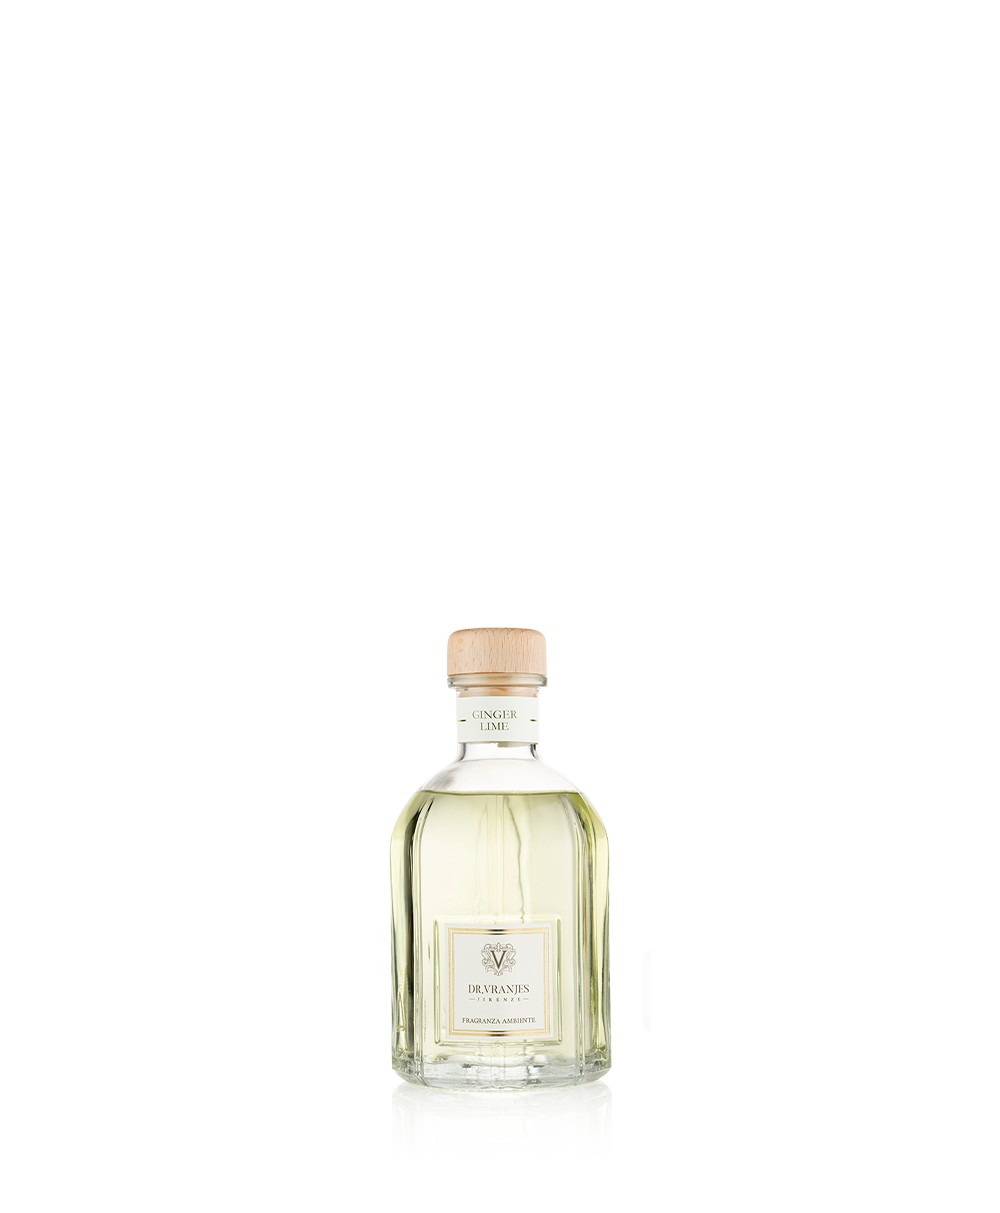 Ginger Lime Diffuser 250ml aus der Home Fragrance Collection von Dr. Vranjes Firenze im RAUM Conceptstore